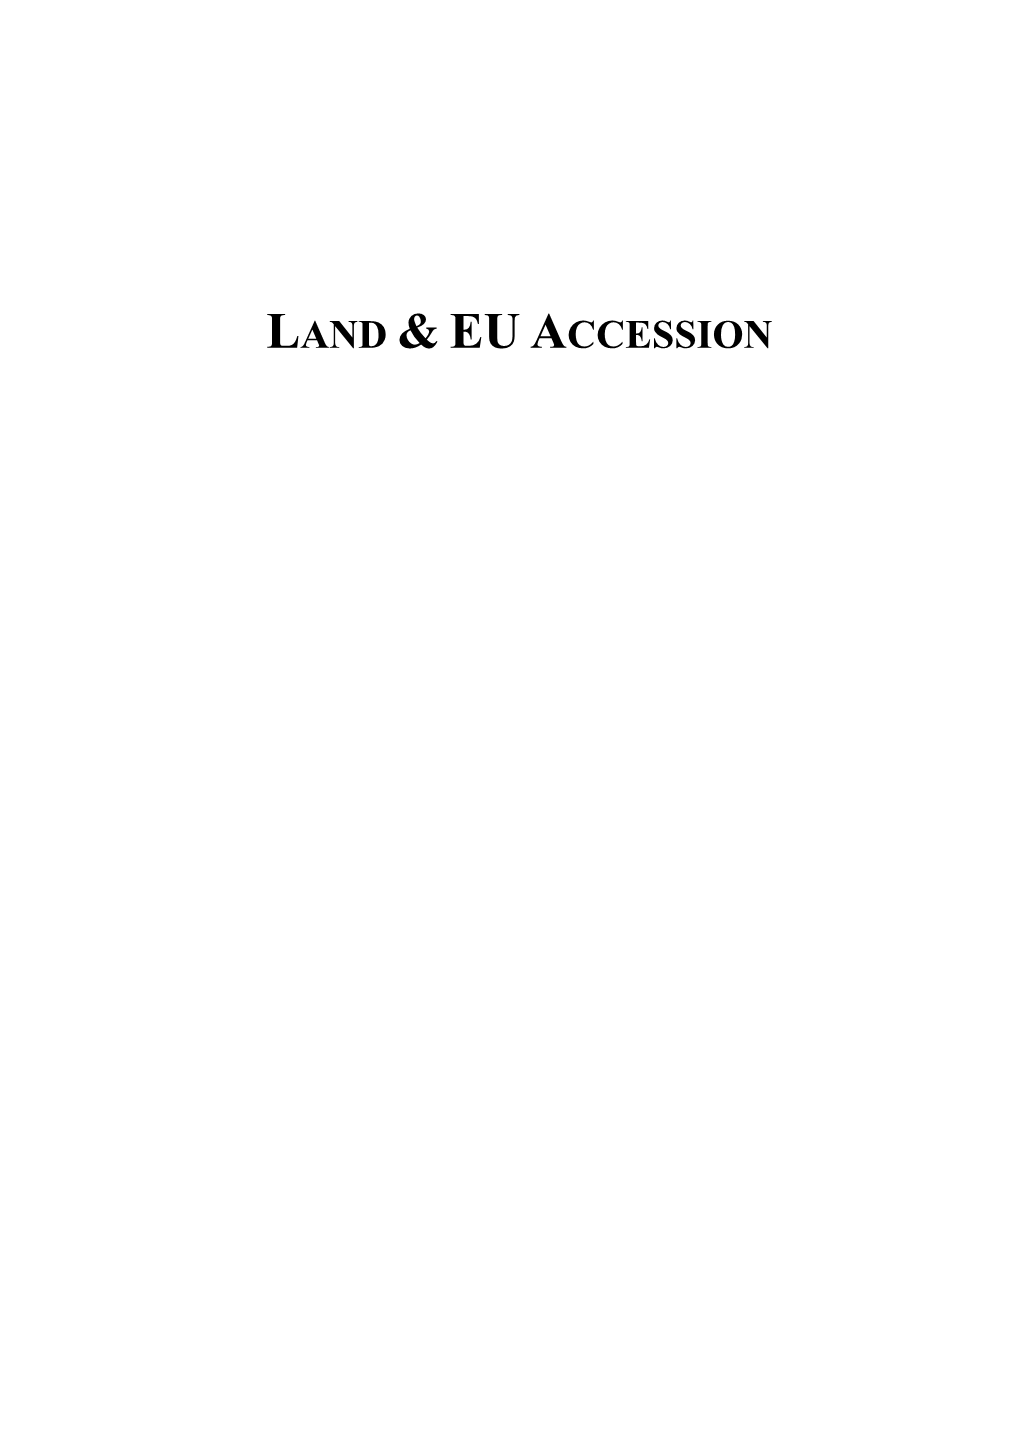 Land & Eu Accession